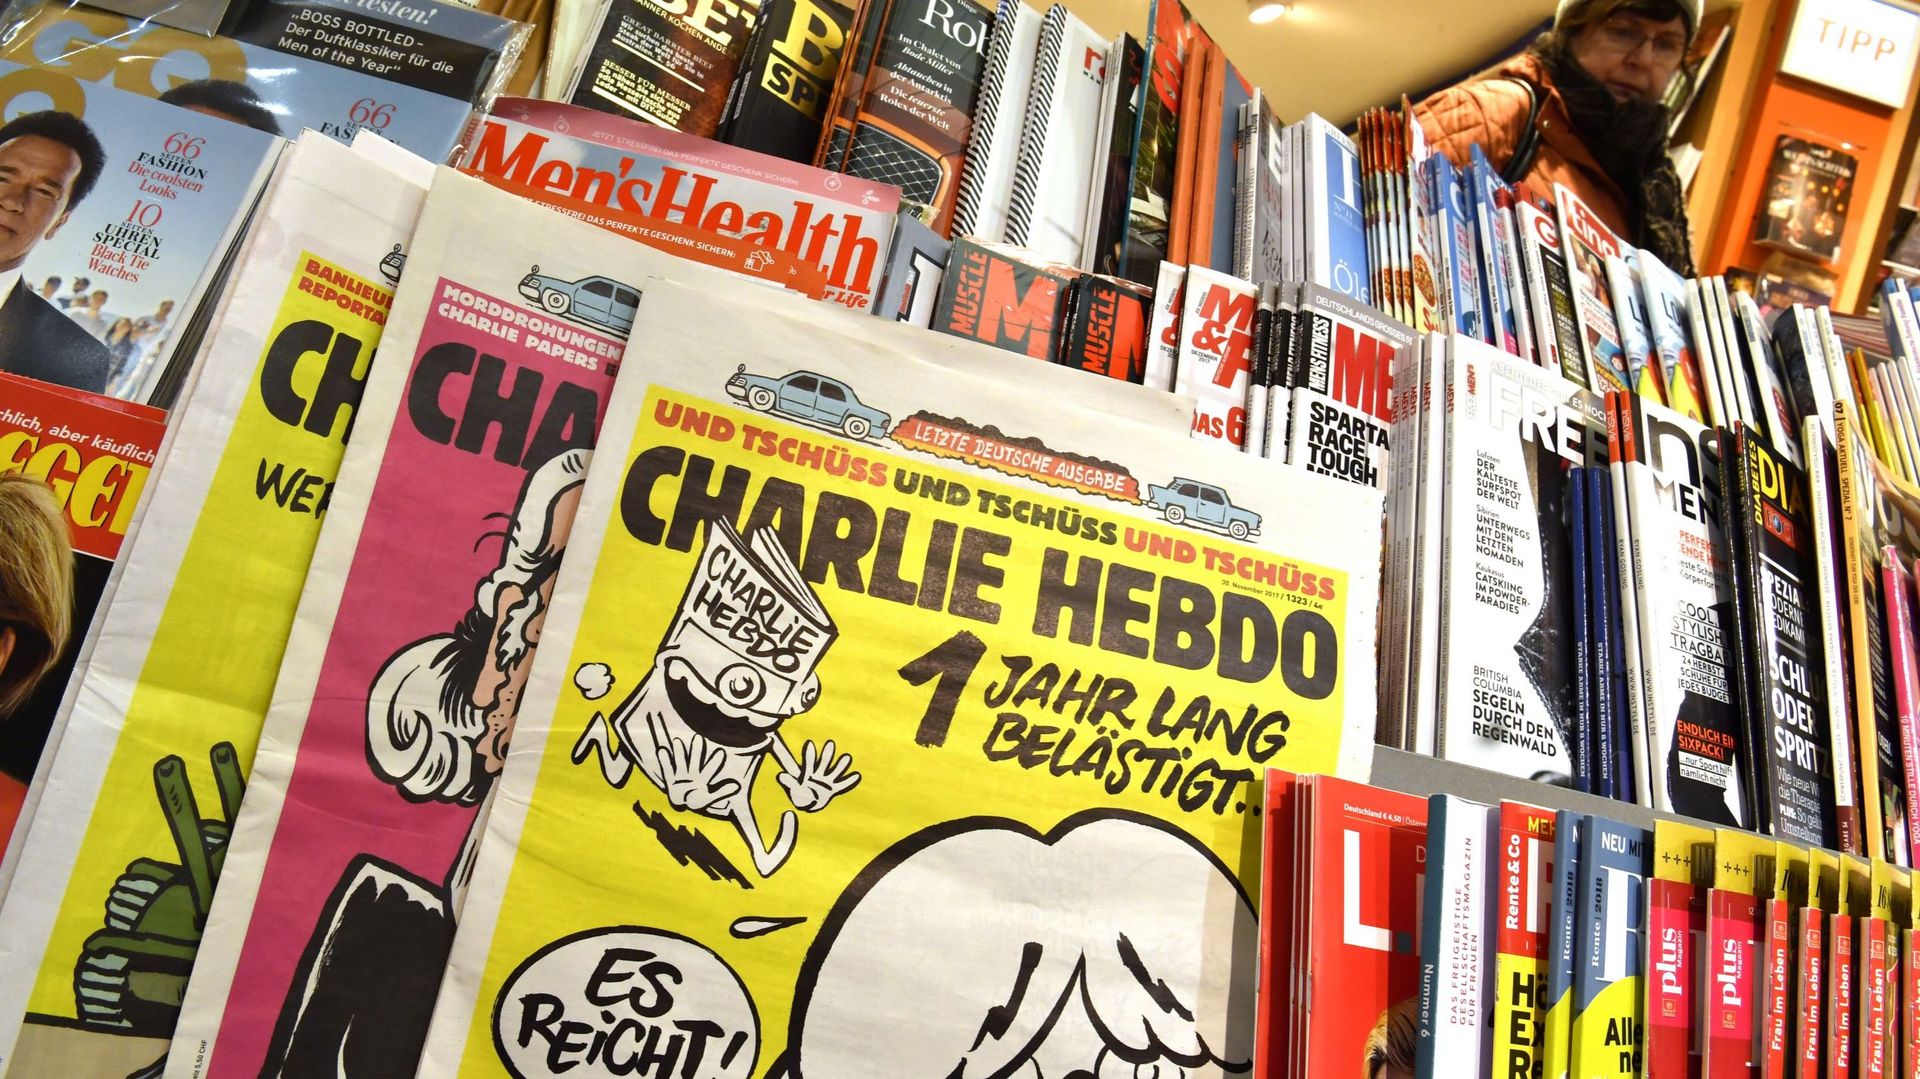 Débat avec des membres de Charlie Hebdo à l'ULB: pas d'action de protestation prévue